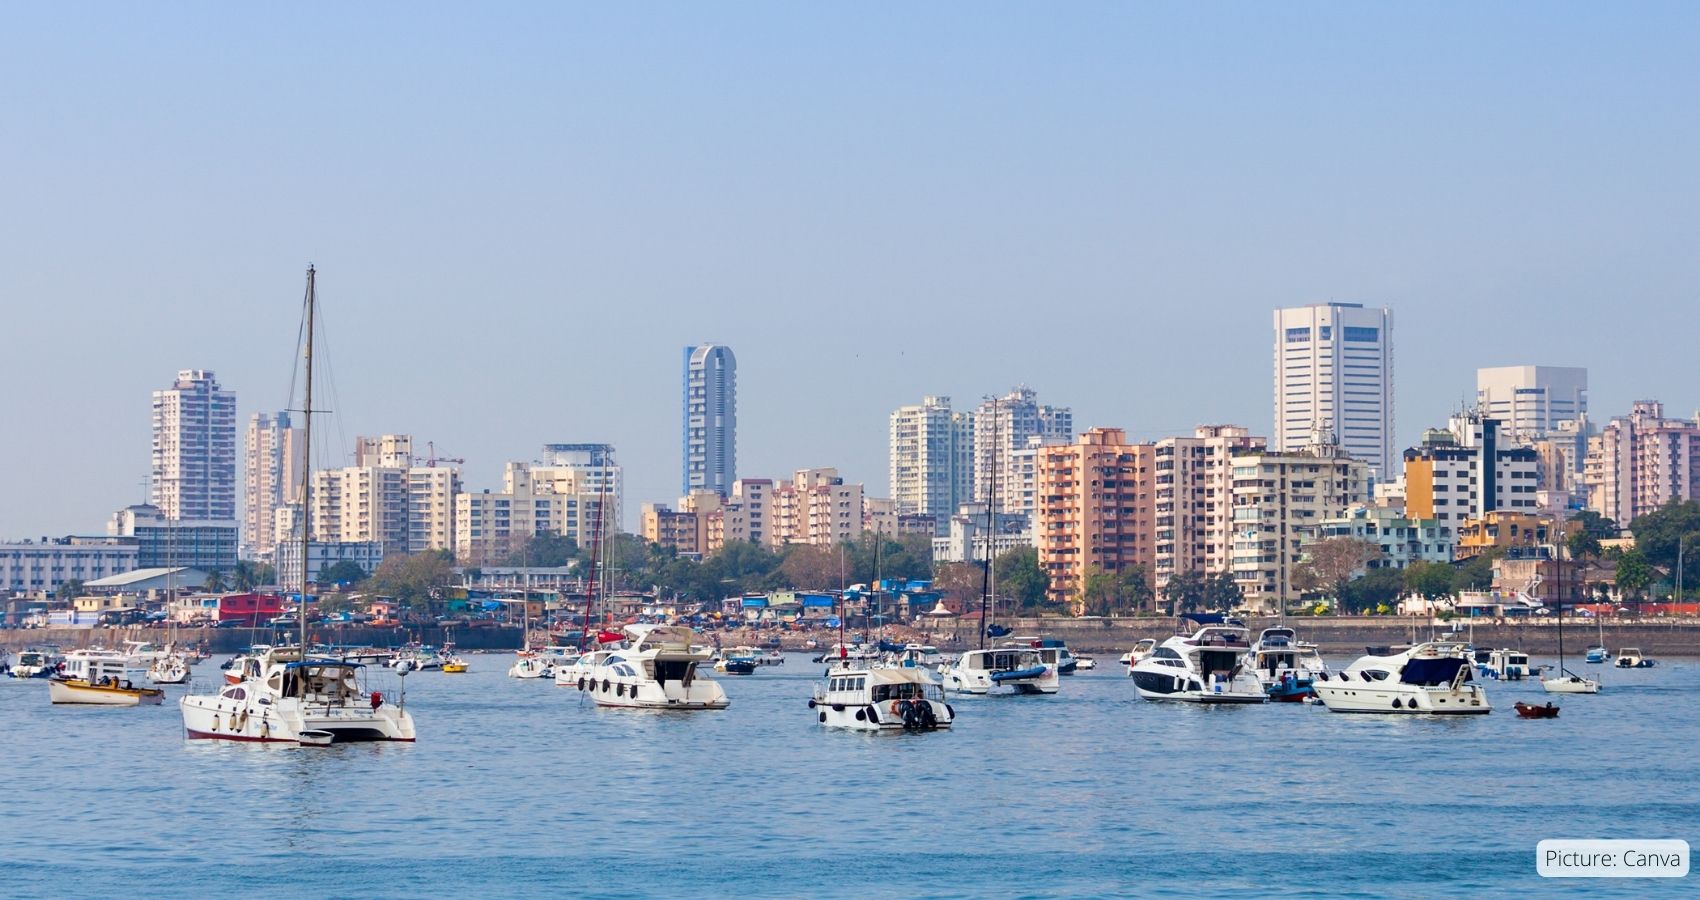 Mumbai Surpasses Beijing as Asian Billionaire Hub